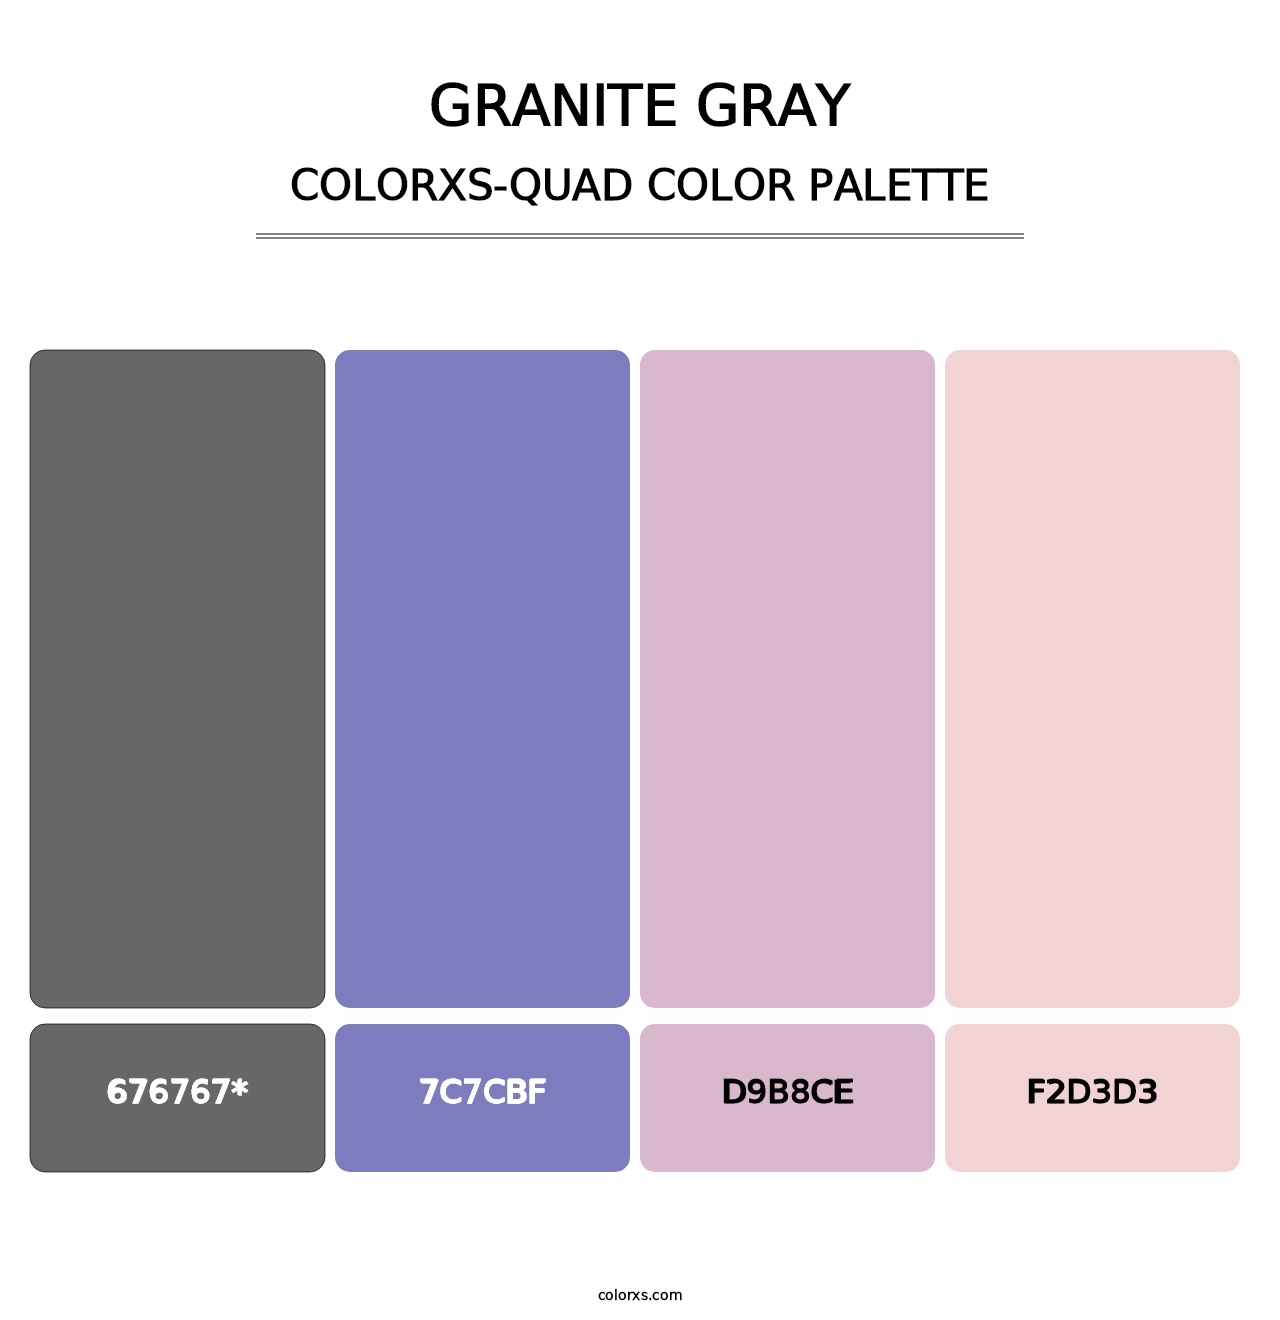 Granite Gray - Colorxs Quad Palette